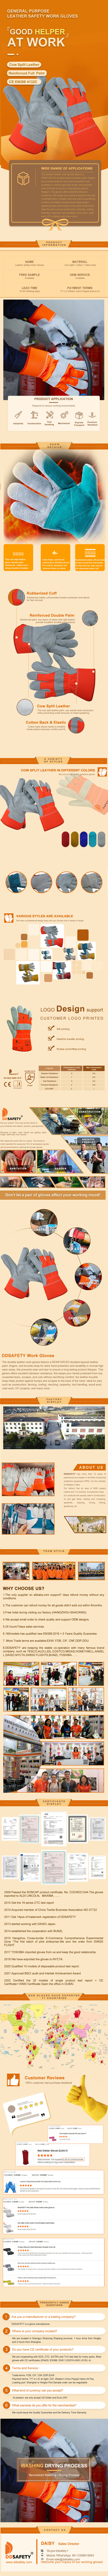 Leather Work Gloves - DLC622 Leather Work Gloves - DLC622 gloves,work gloves,Leather Work Gloves